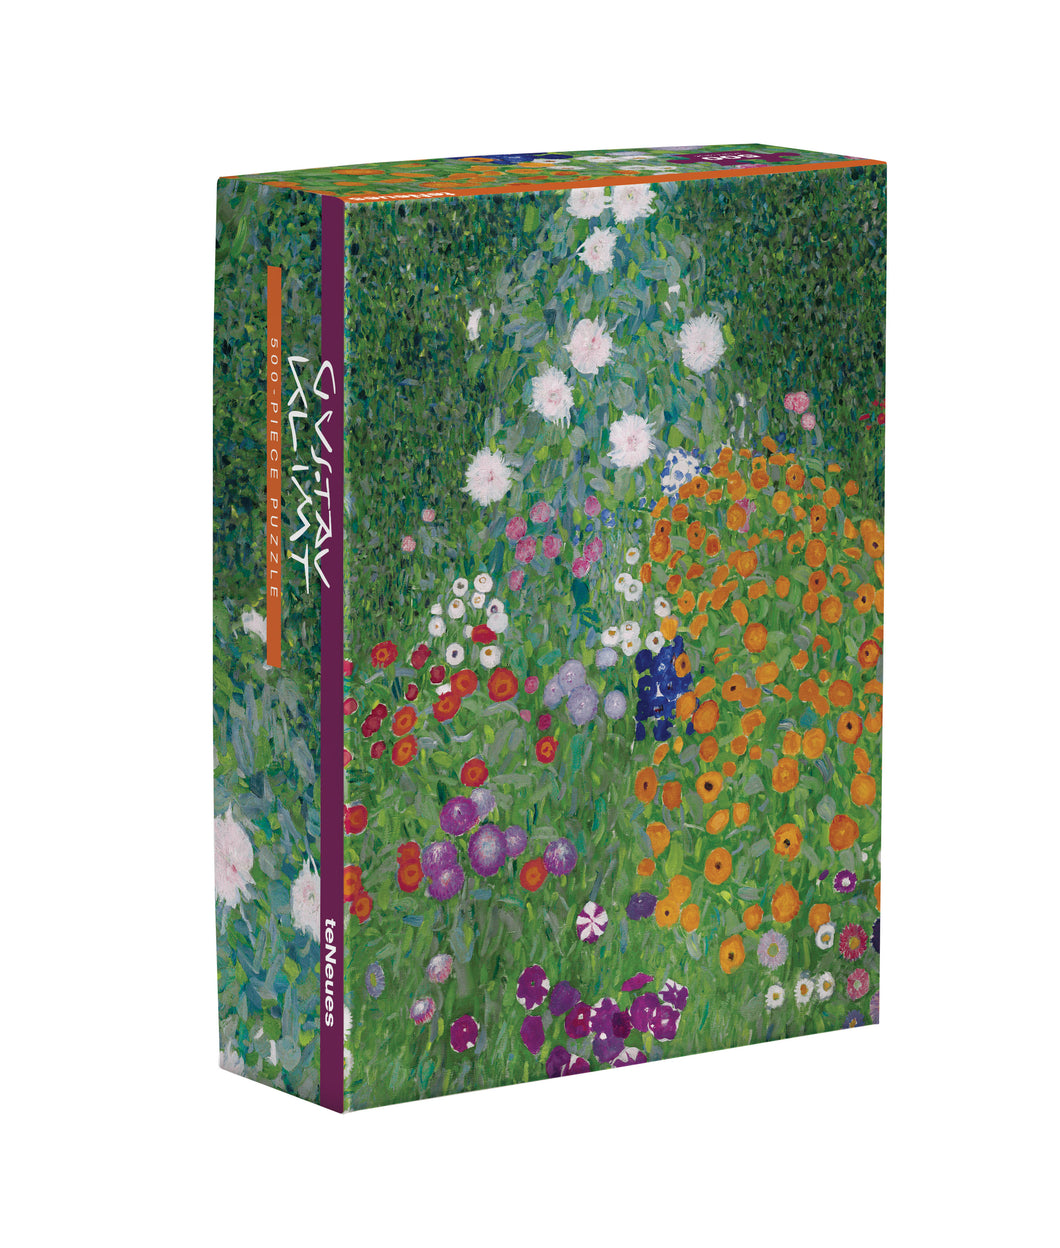 Flower Garden by Gustav Klimt, 500-Piece Puzzle